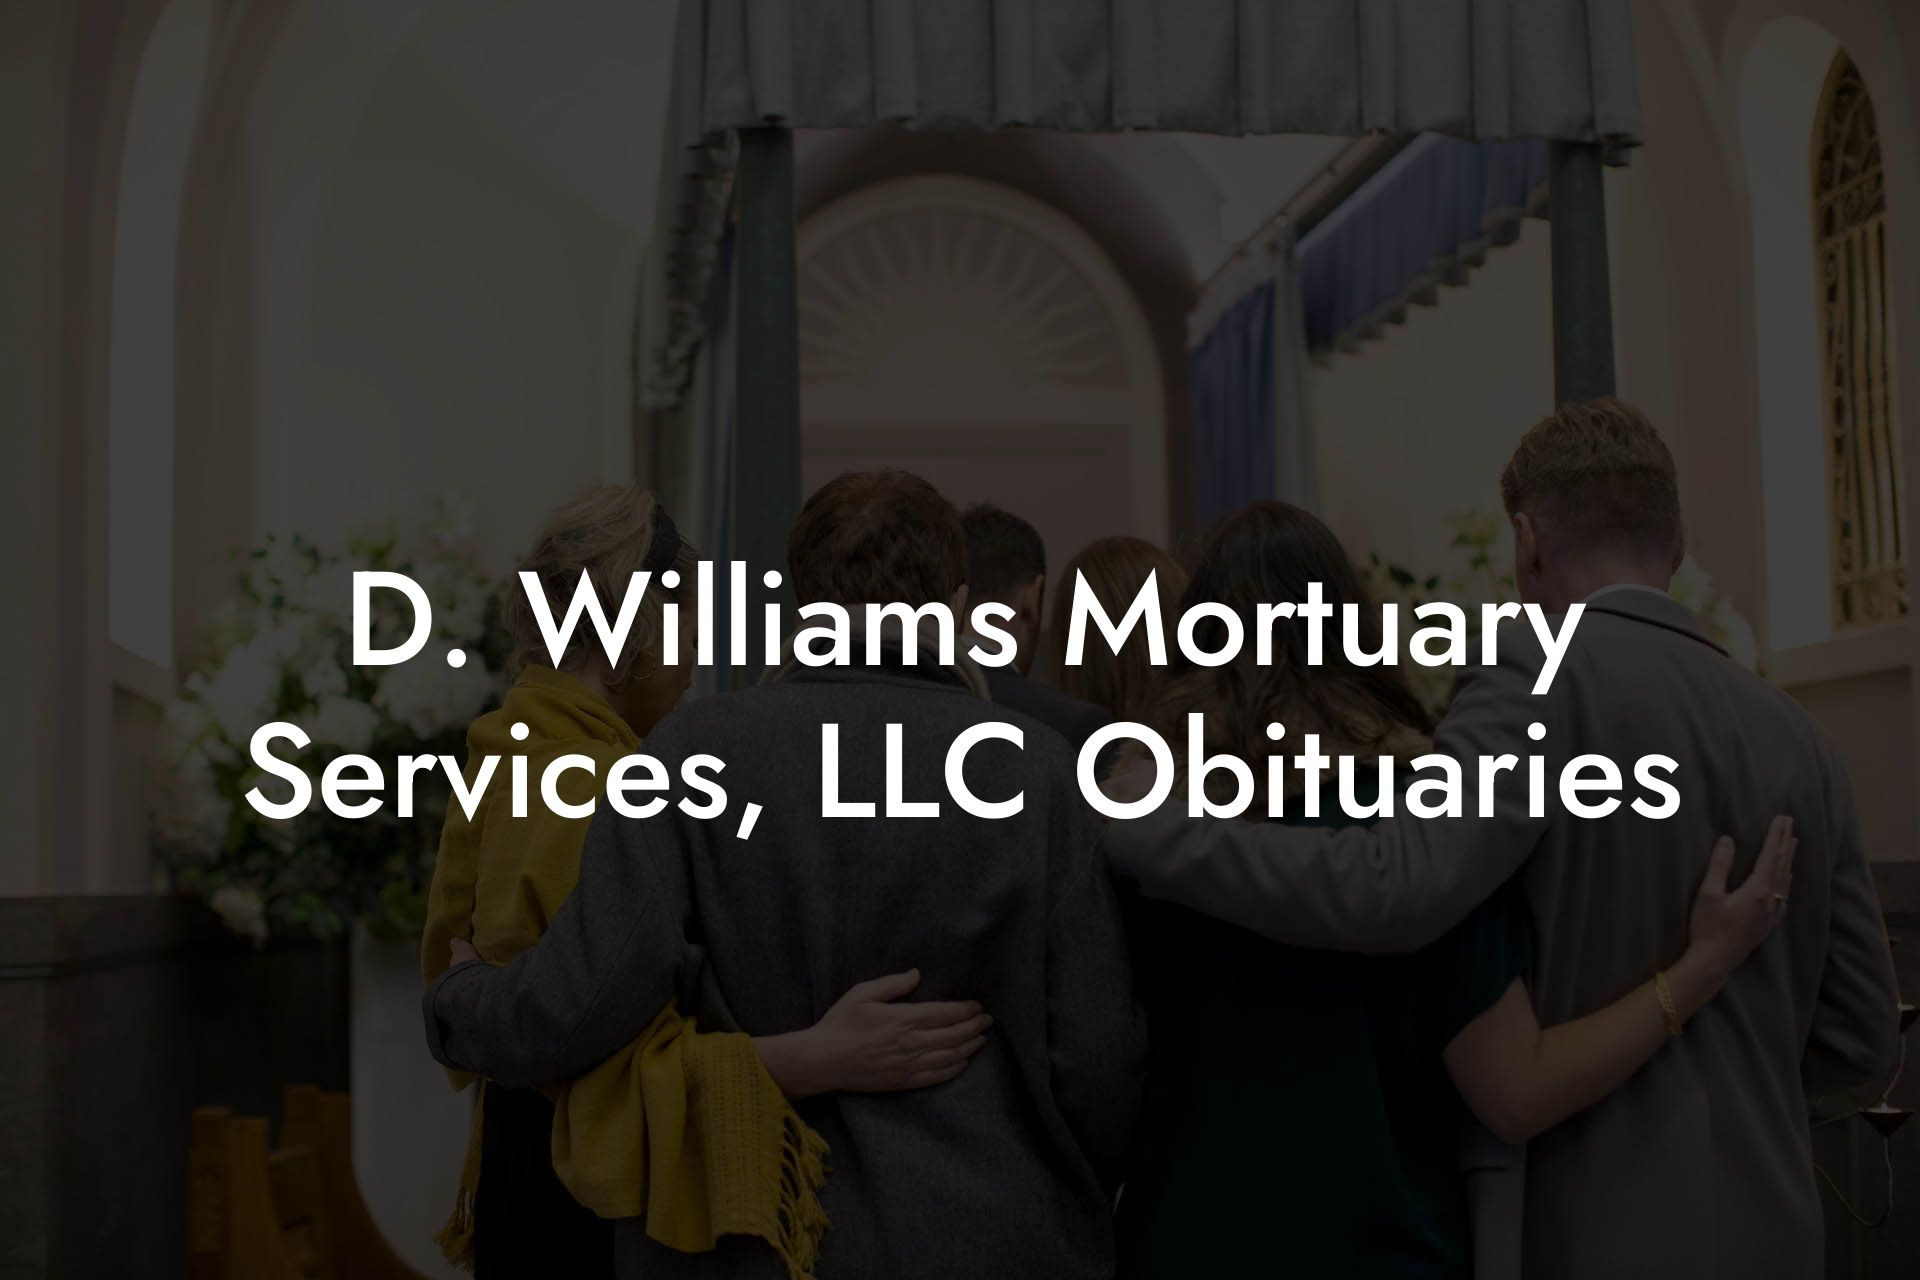 D. Williams Mortuary Services, LLC Obituaries